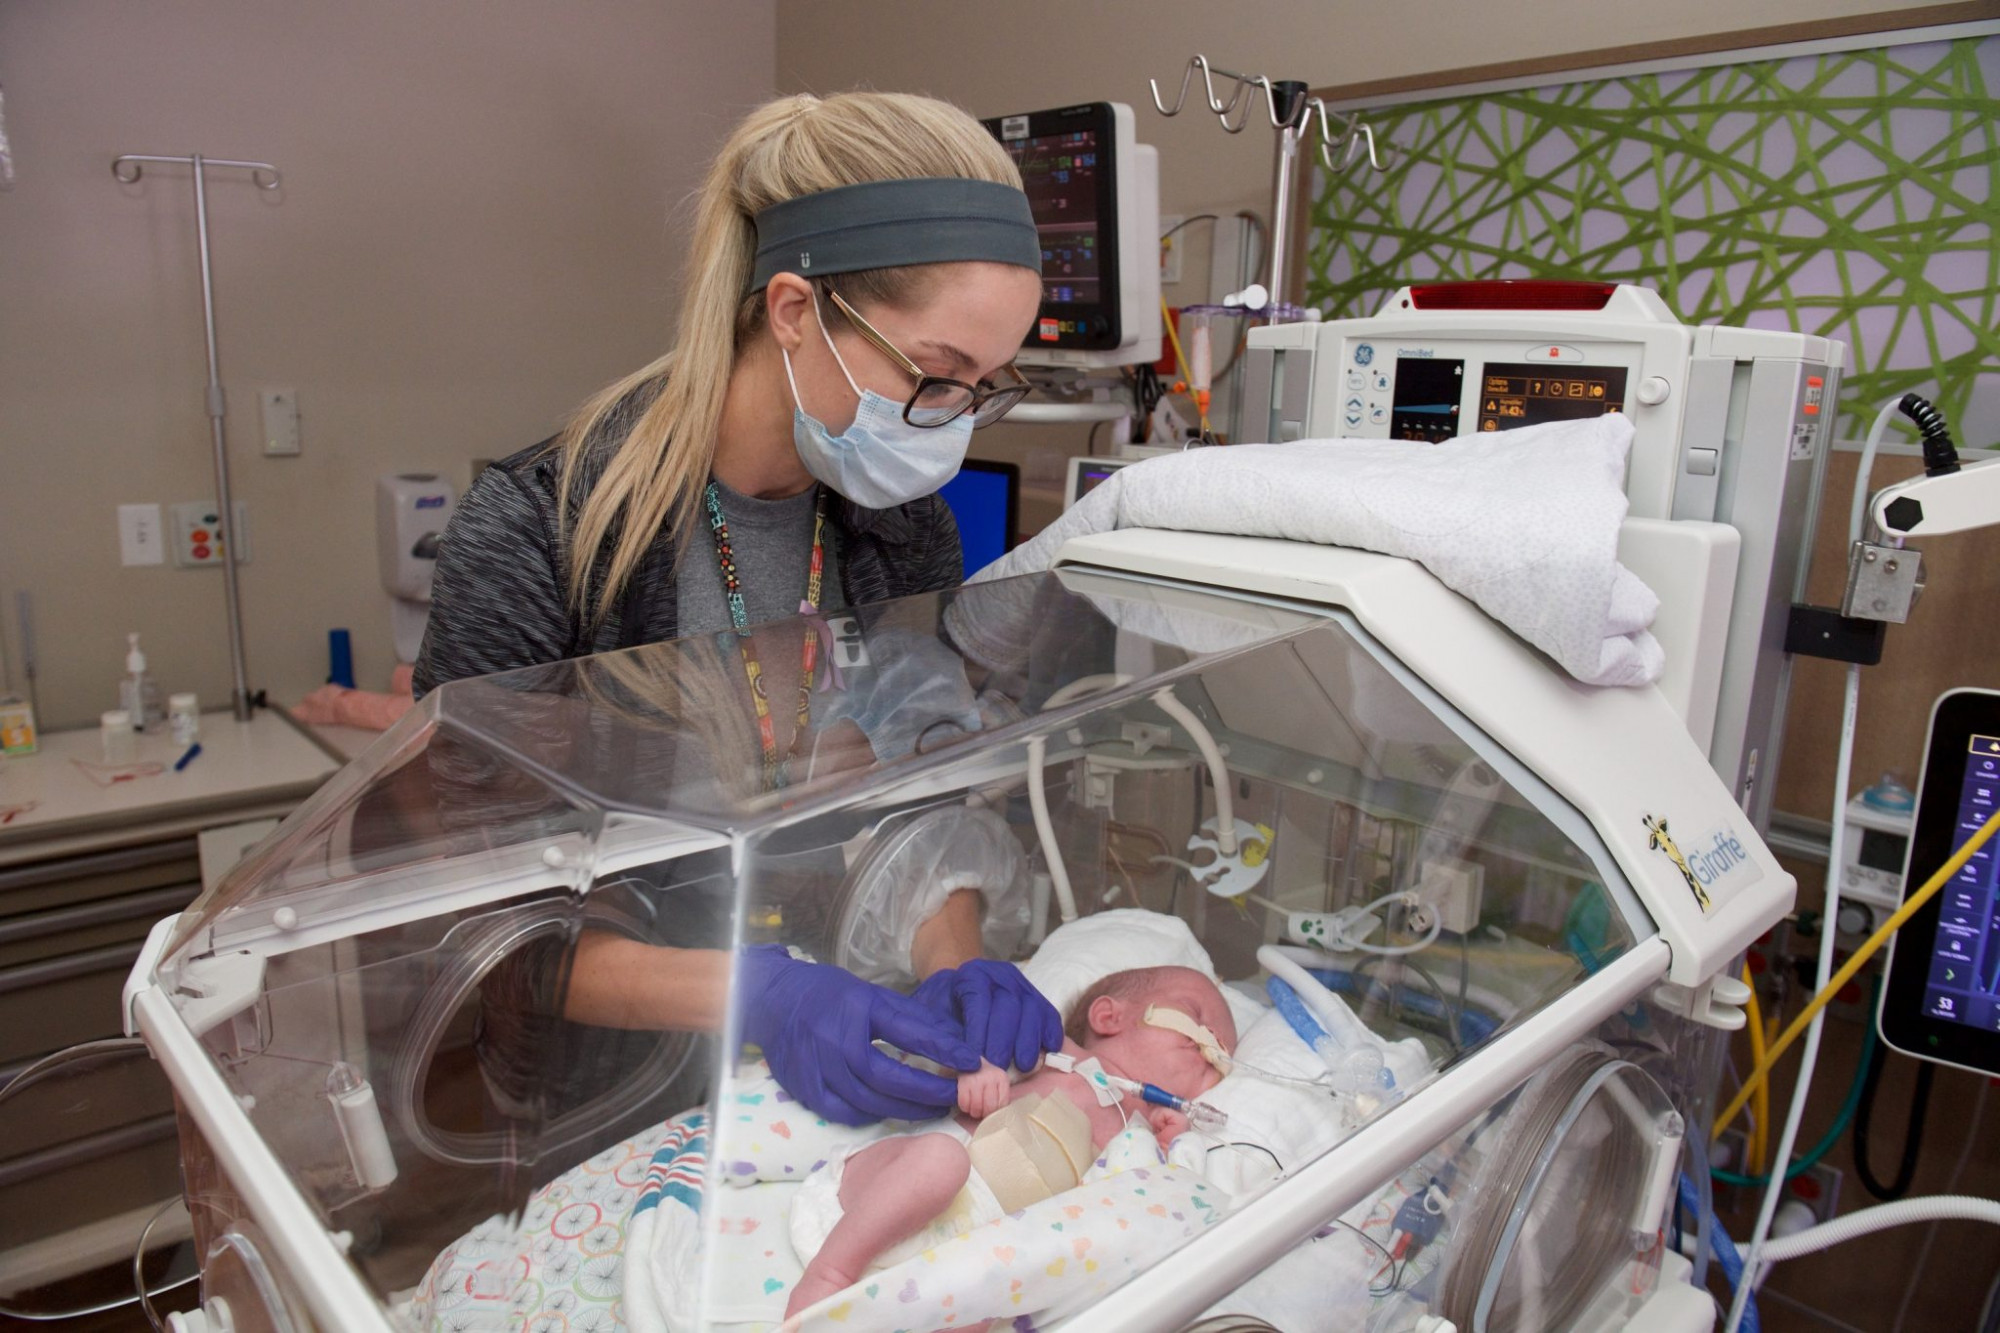 Nhiều em bé sinh ra trong mùa dịch phải cần được chăm sóc trong những khu chăm sóc đặc biệt dành cho trẻ sơ sinh như thế này - Ảnh: Akron Children's Hospital